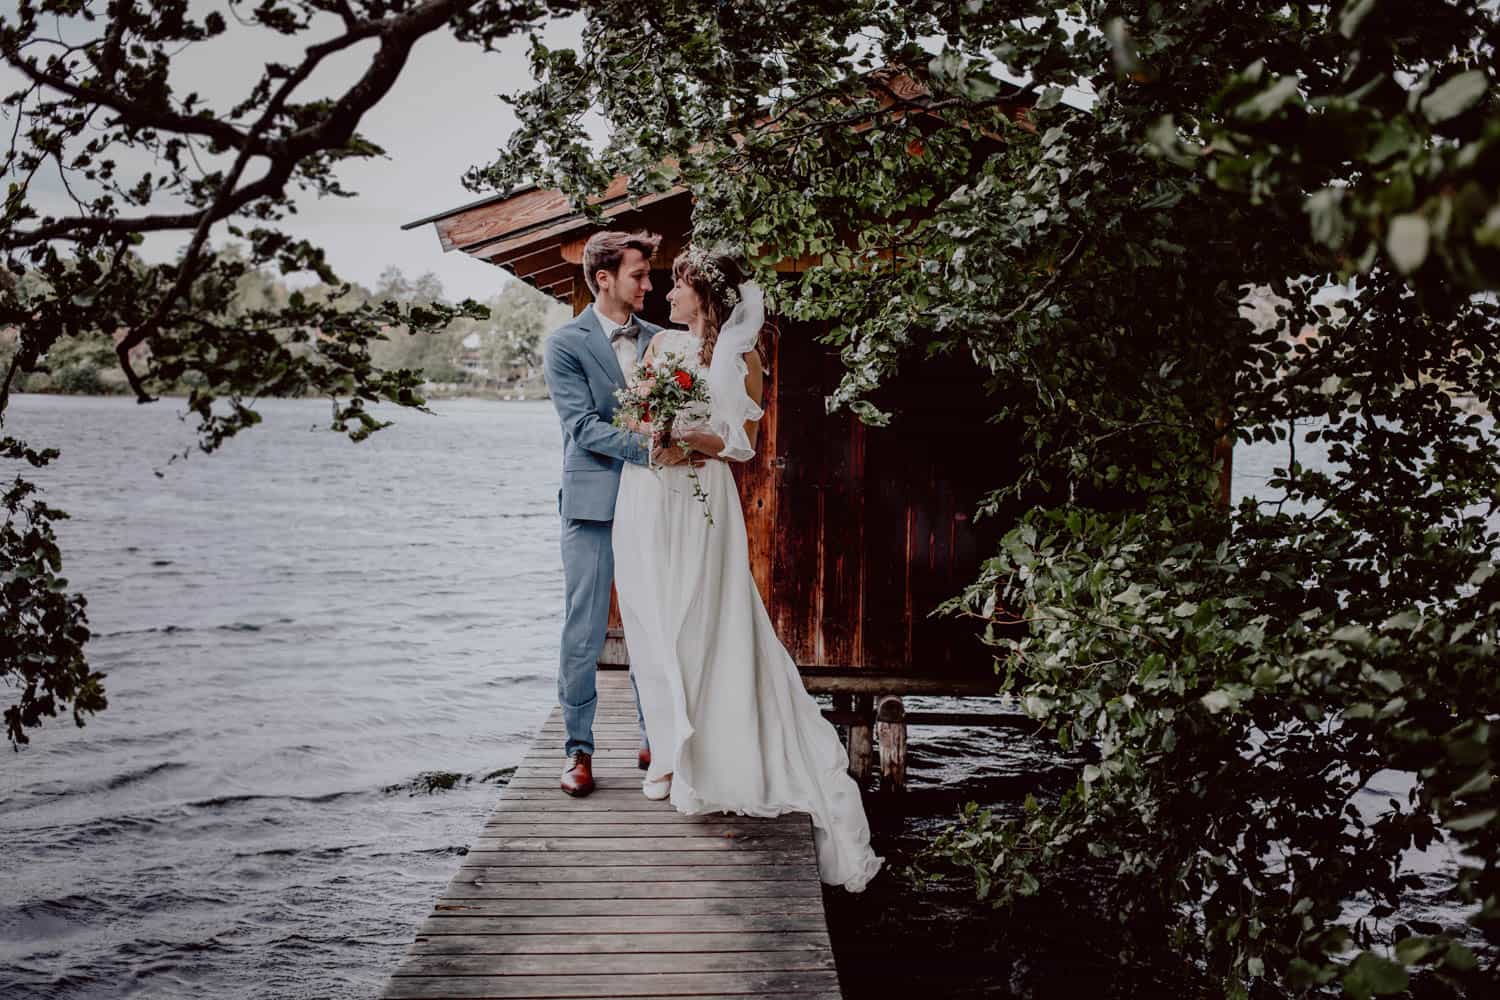 Brautpaar steht während ihrer Hochzeit im Fünfseeland auf einem Steg. Im Hintergrund sieht man den See und ein Bootshaus. Im Vordergrund Blätter und Zweige eines Baums.